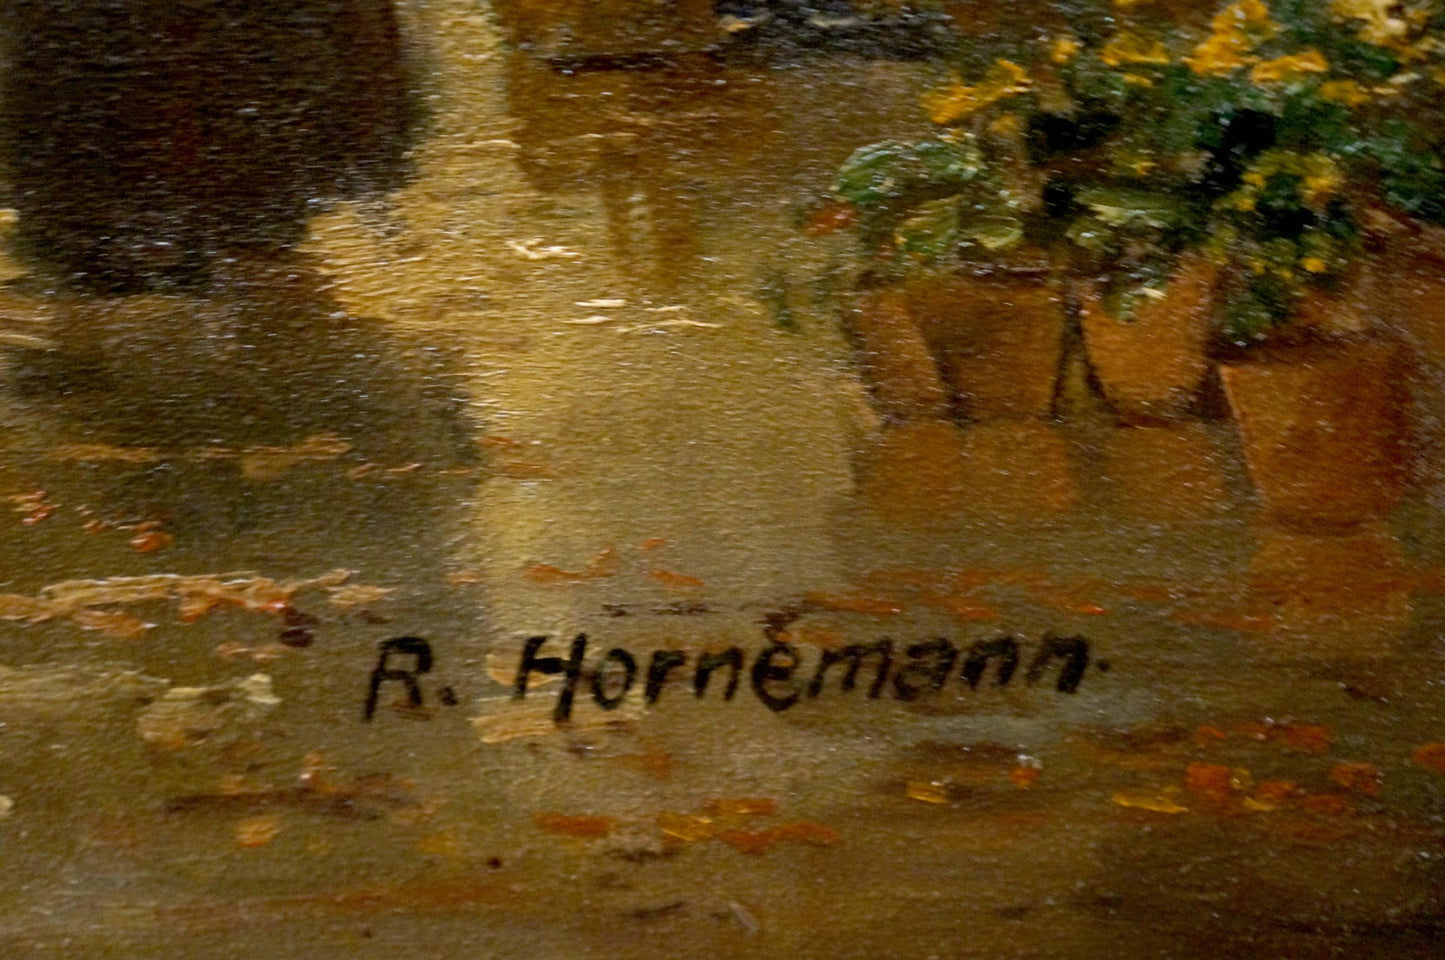 Oil painting City life R. Hornemann